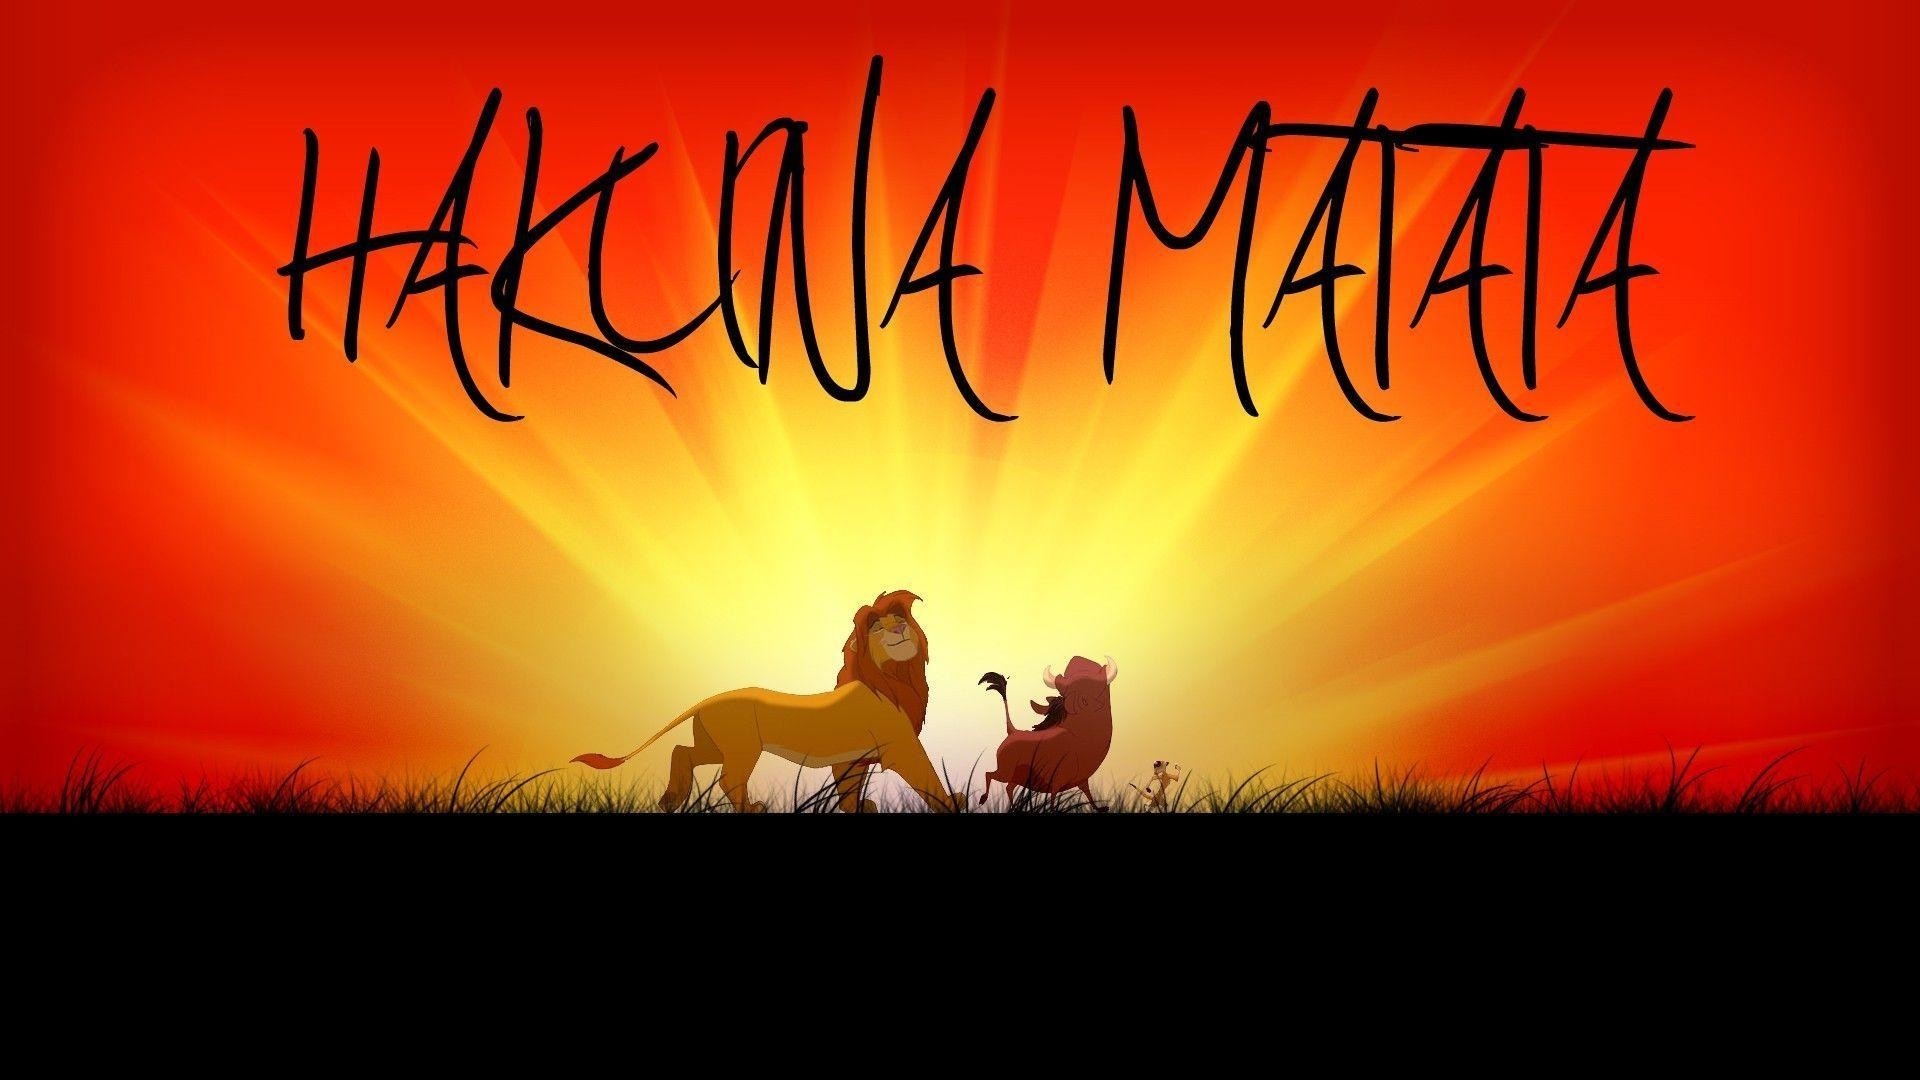 Hakuna Matata, Fun and laughter, Memorable animation, Disney magic, 1920x1080 Full HD Desktop